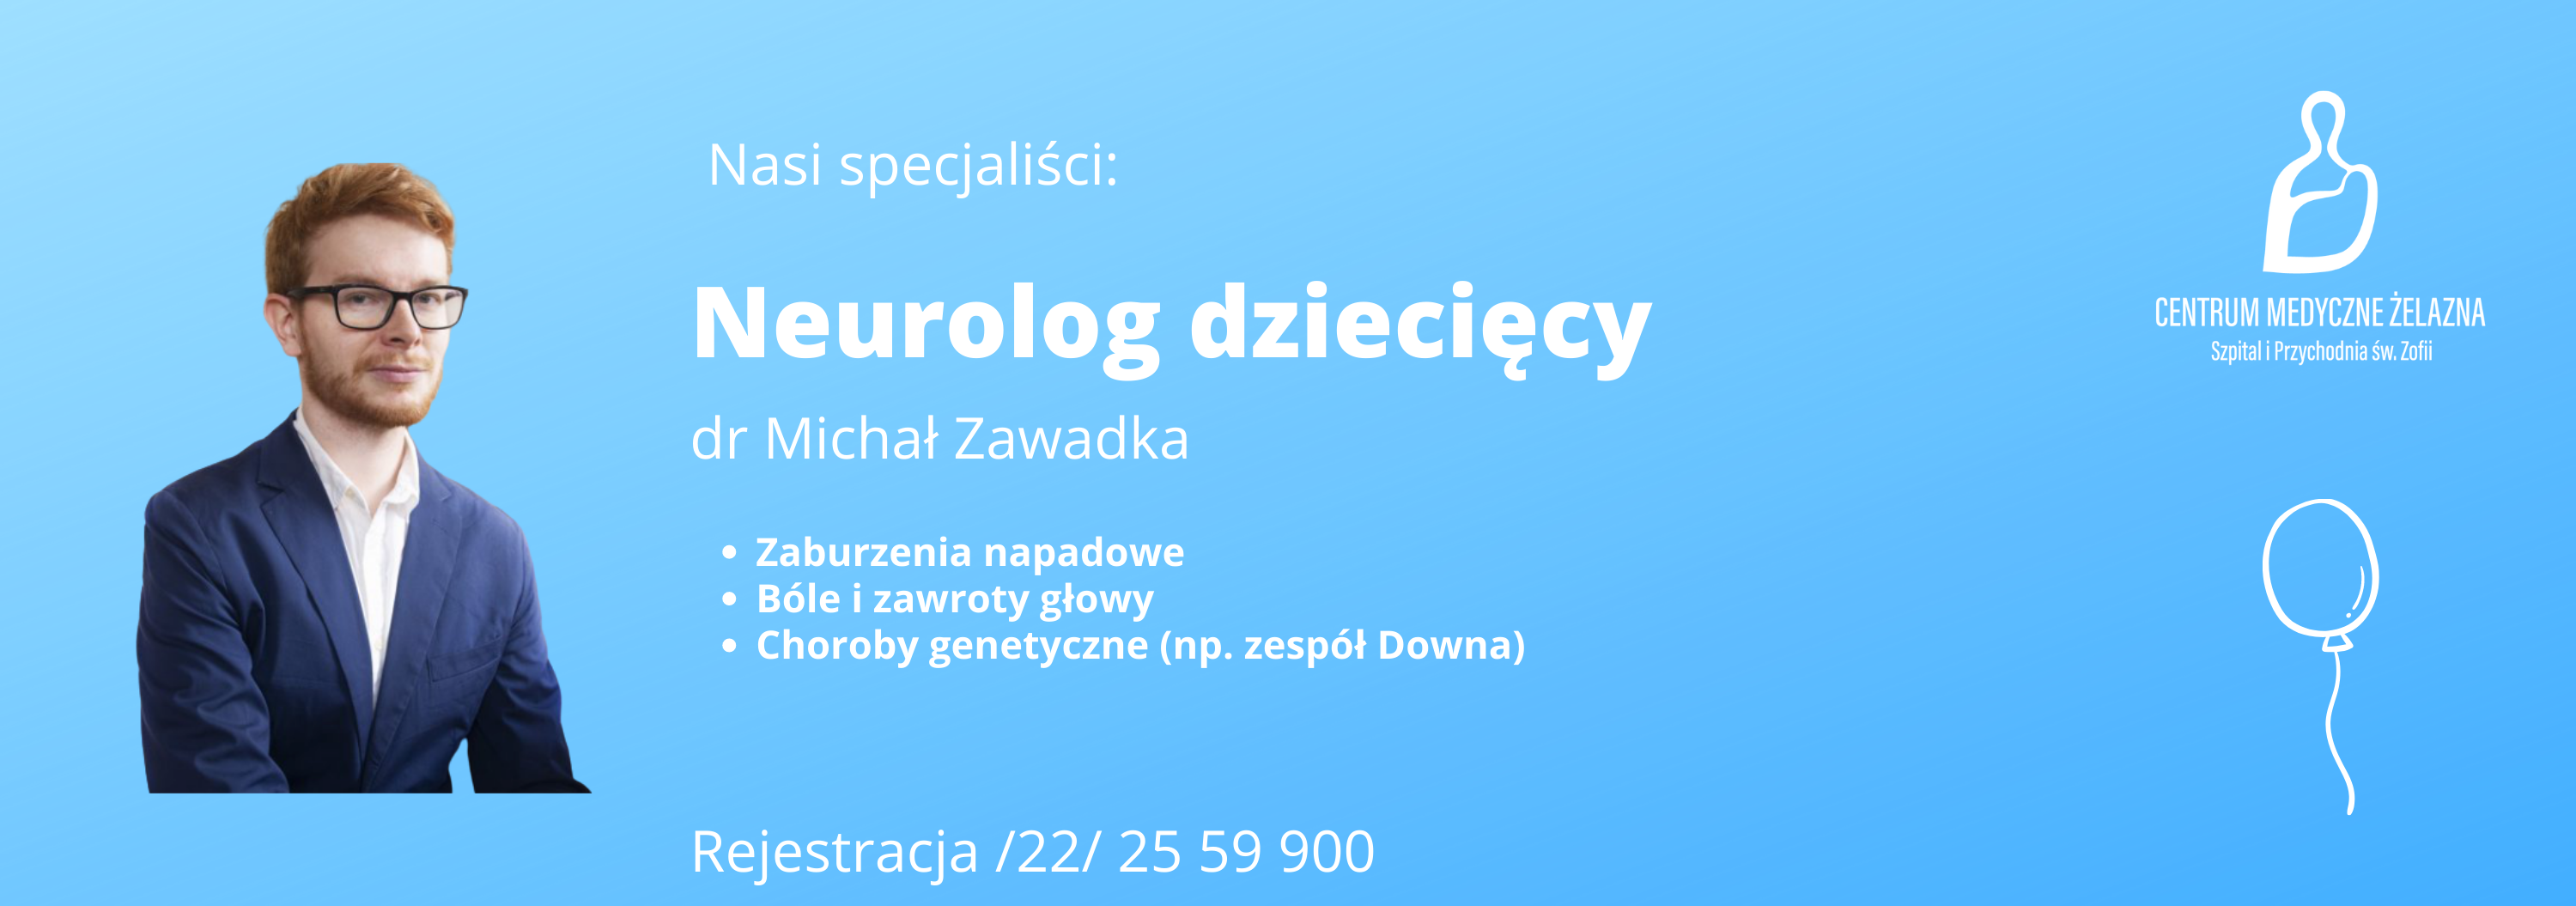 Neurolog dziecięcy dr Michał Zawadka